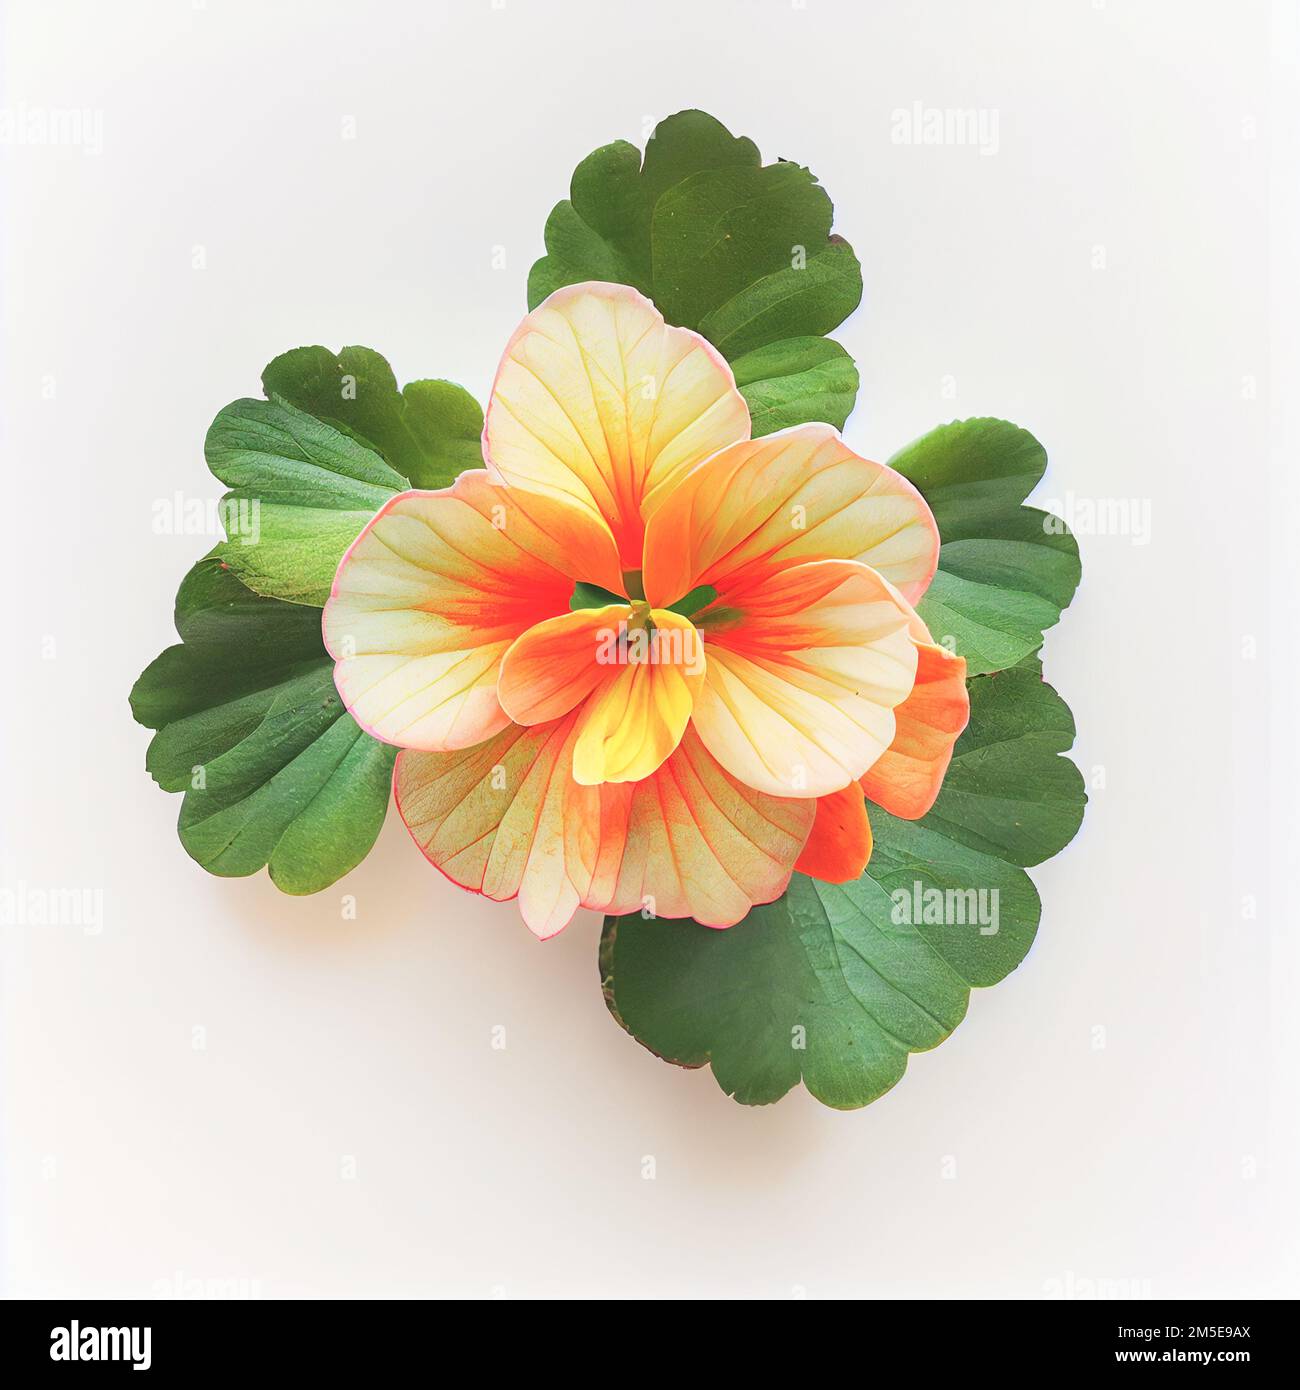 Vista dall'alto un fiore di Begonia isolato su sfondo bianco, adatto per l' uso su biglietti per San Valentino, lettere d'amore o disegni primaverili  Foto stock - Alamy